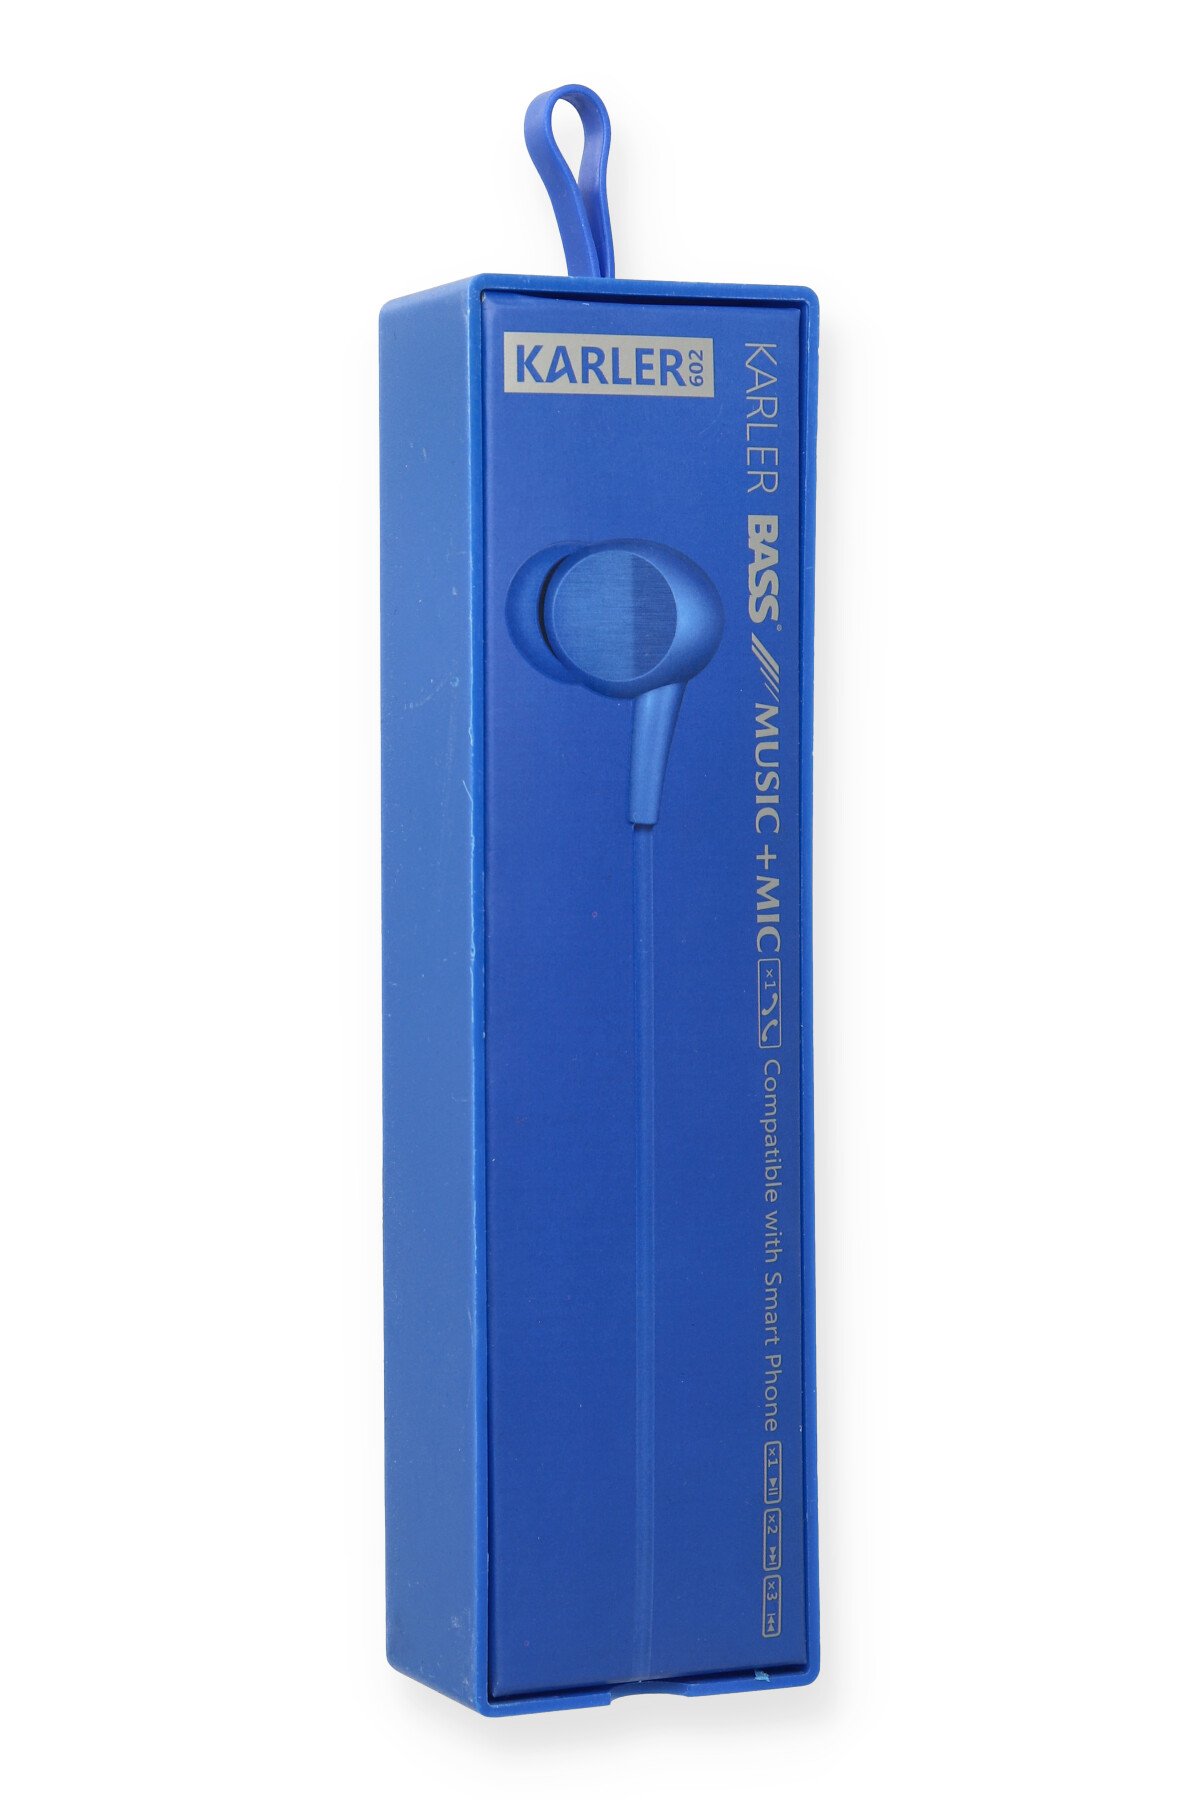 Karler Bass EV-3045 Kablolu Kulaklık - Siyah